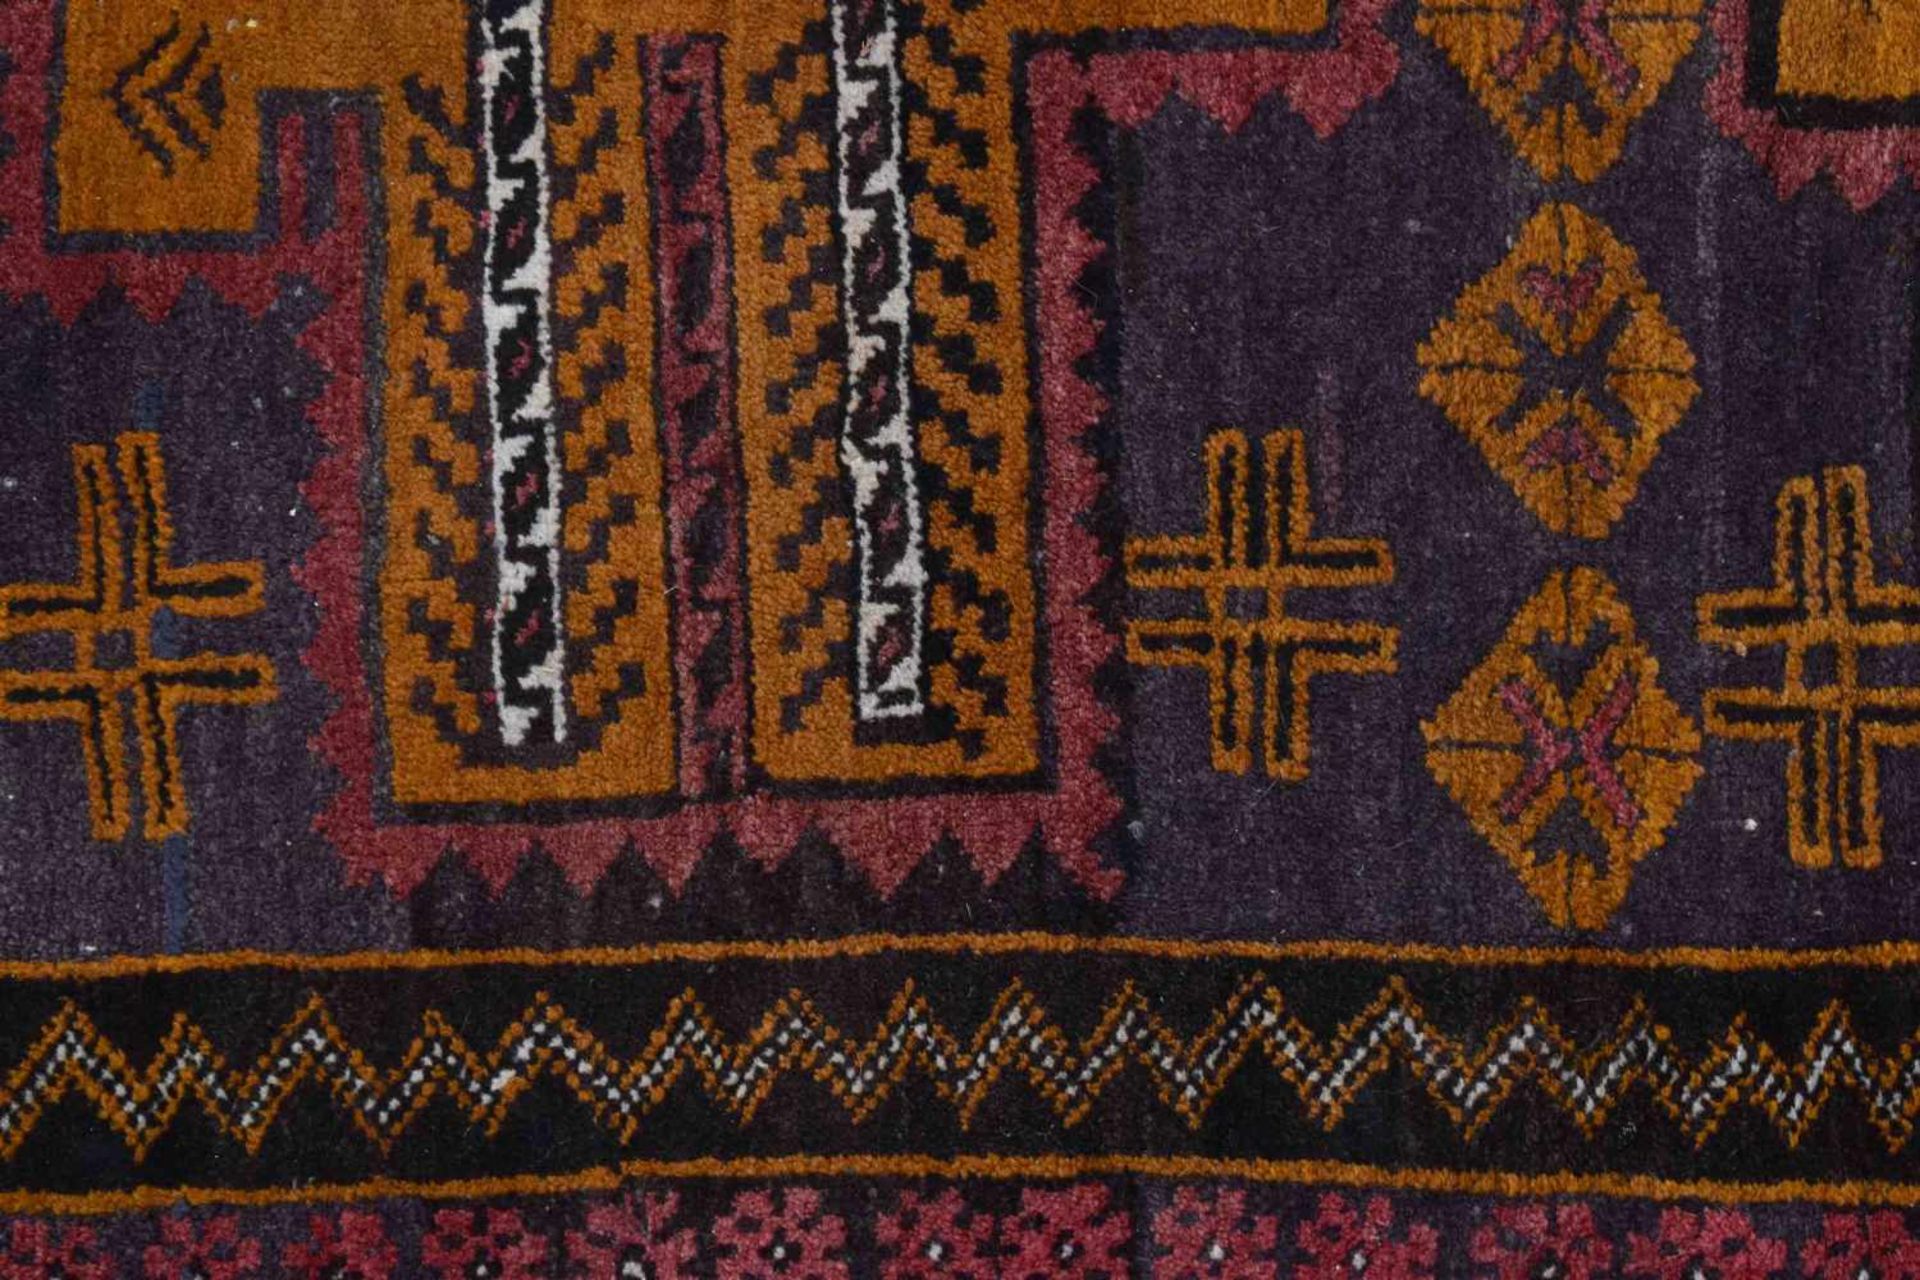 alter Orient Teppichhandgeknüpft, 190 cm x 117 cmold orient carpethand knotted, 190 cm x 117 cm - Bild 2 aus 3